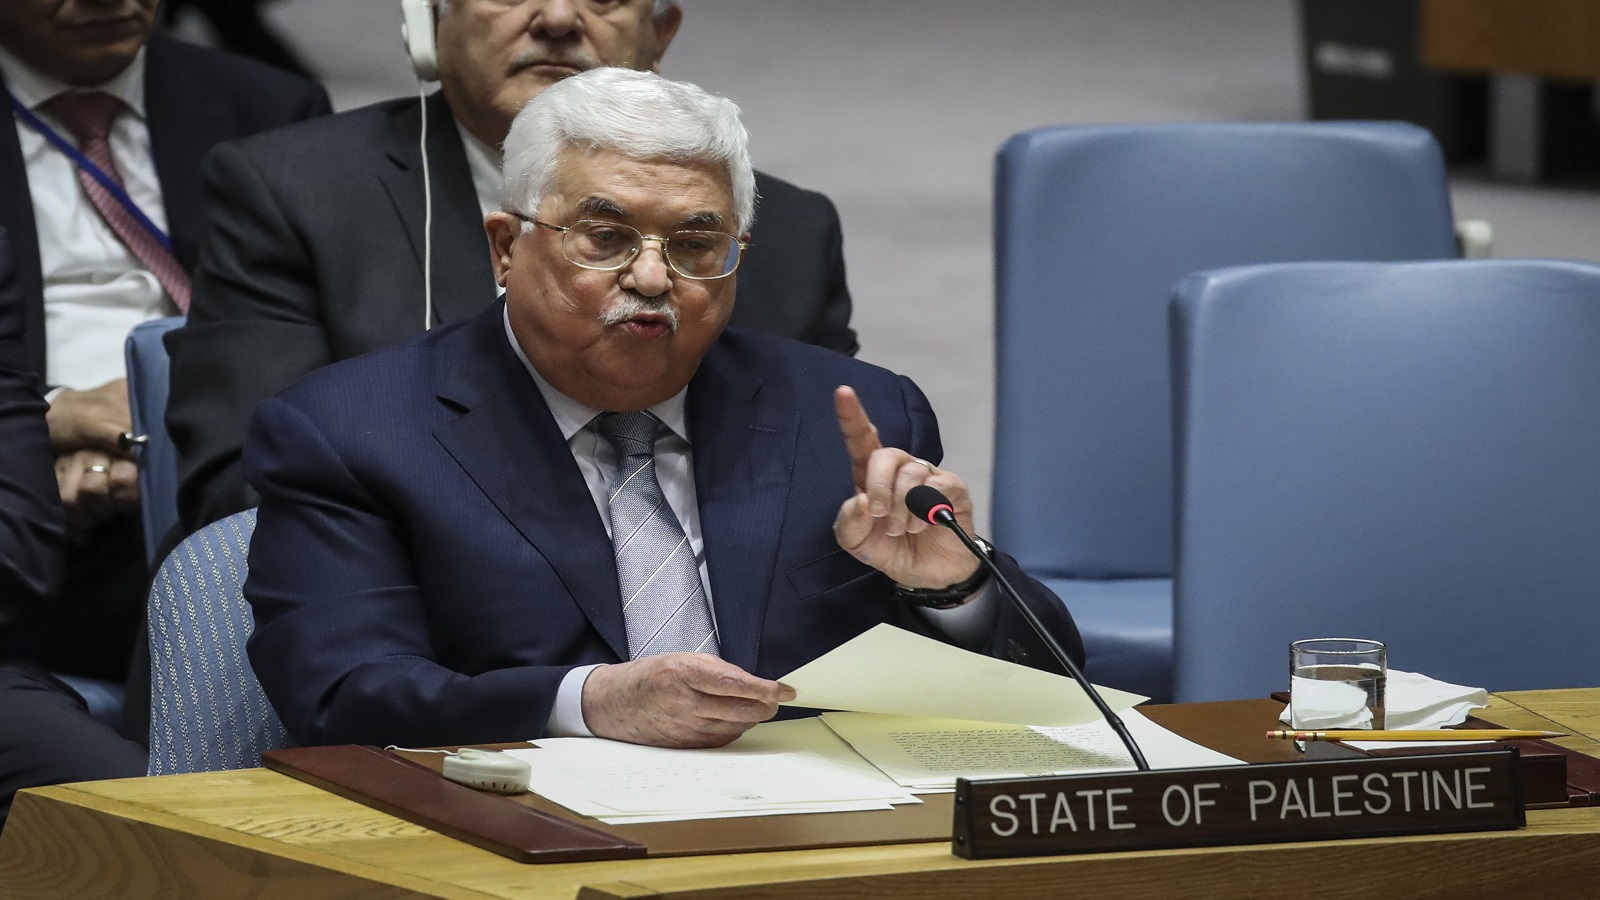 كوشنر يحرض الفلسطينيين على عباس:صفقة القرن قريبة